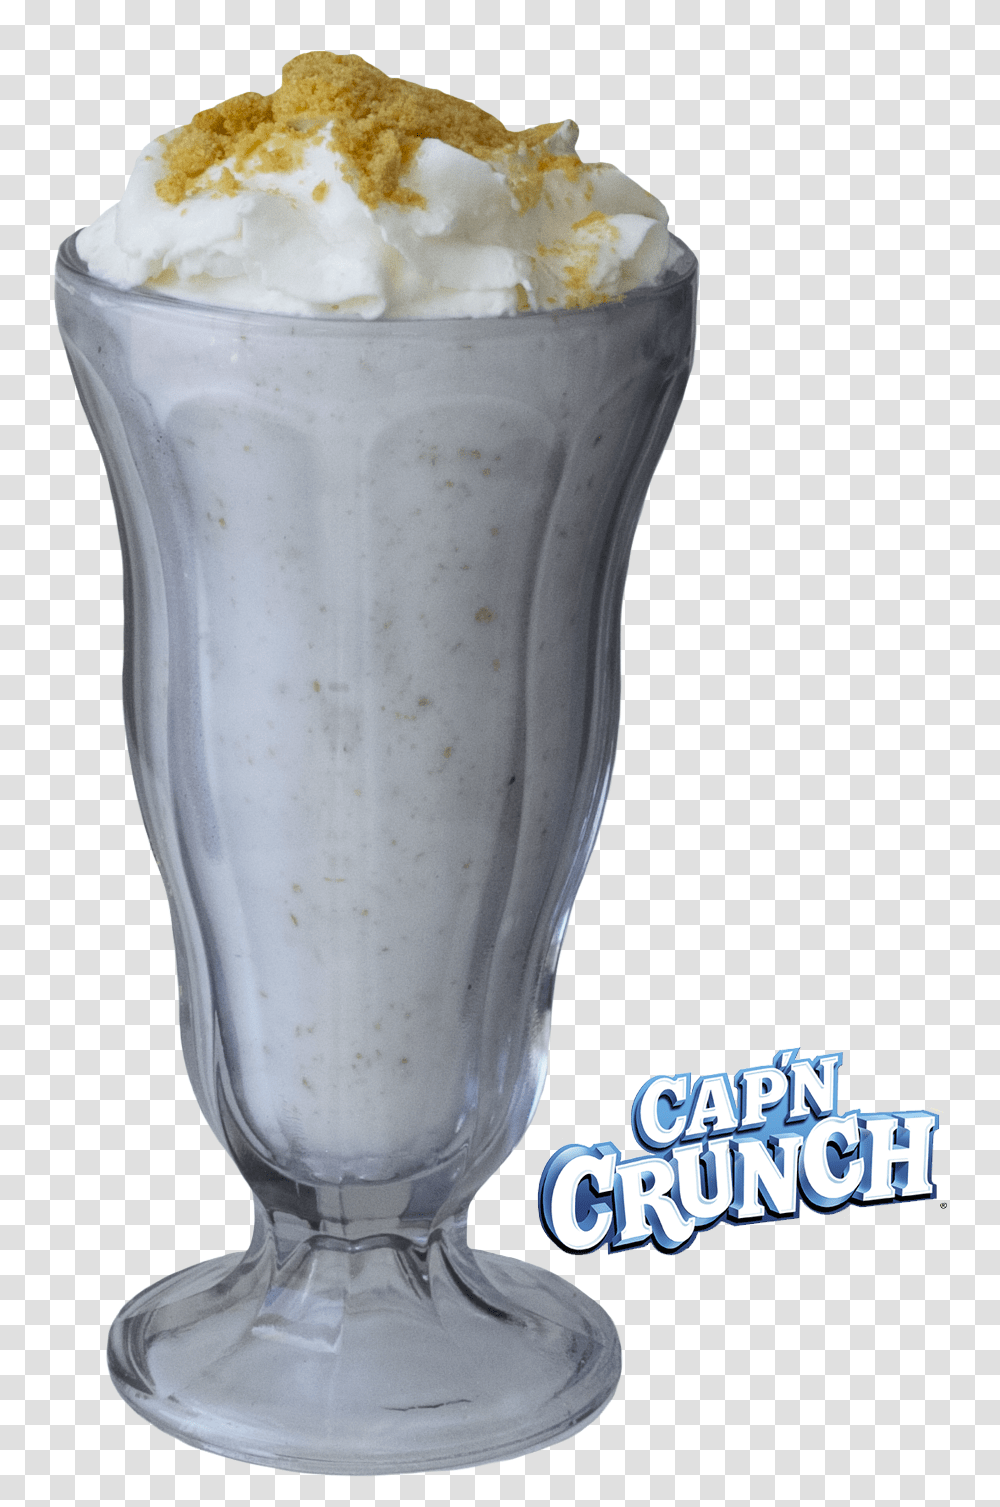 Cap N Crunch, Milkshake, Smoothie, Juice, Beverage Transparent Png